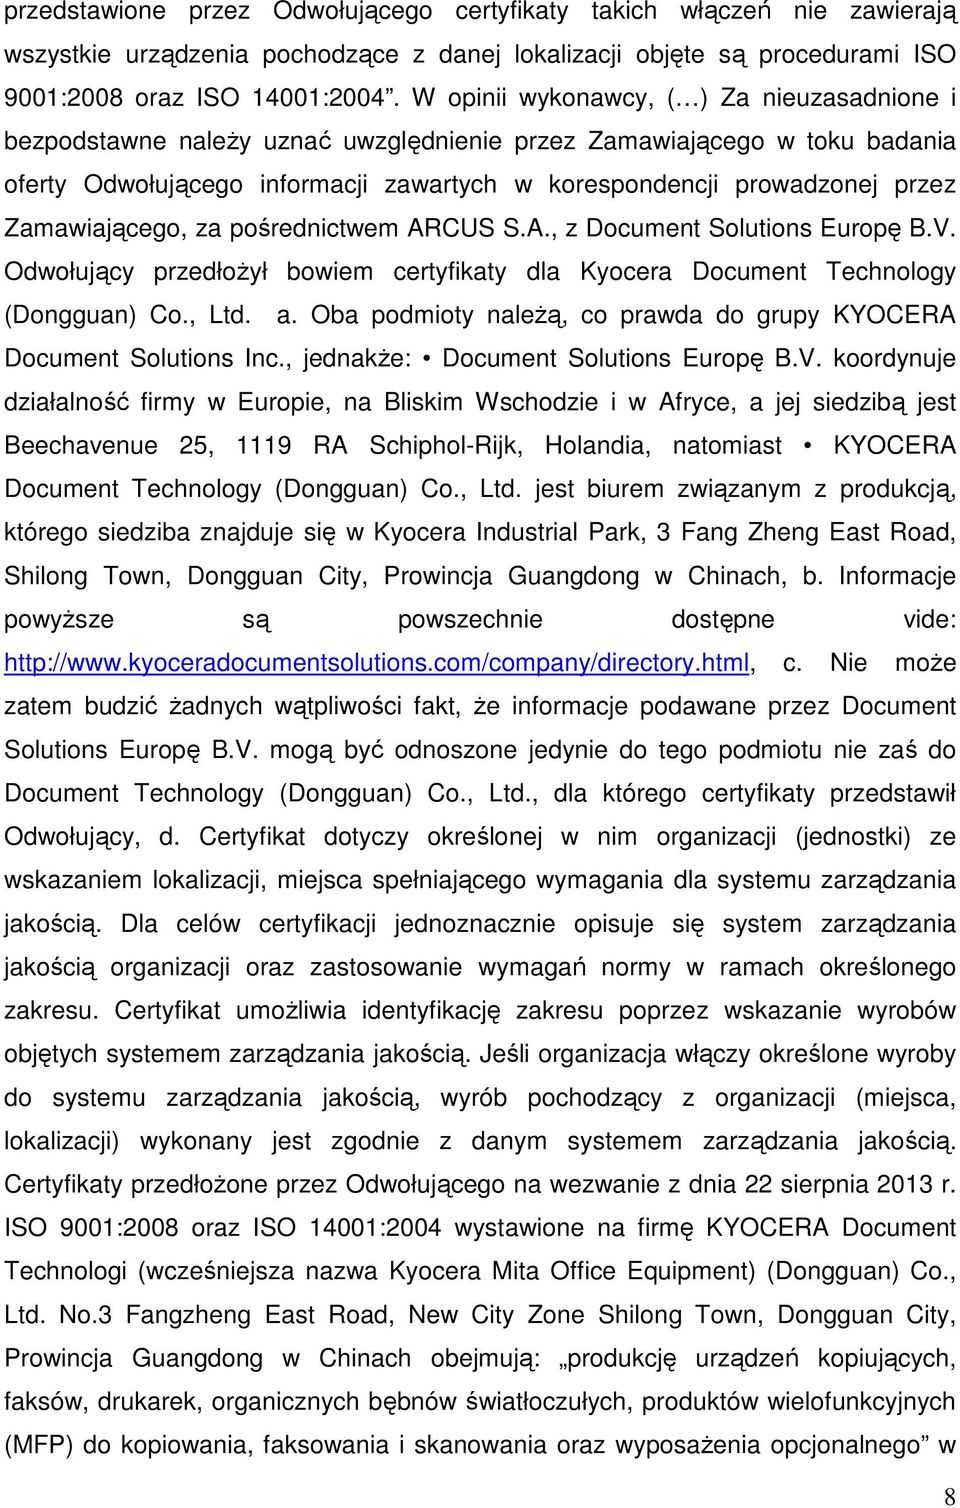 Zamawiającego, za pośrednictwem ARCUS S.A., z Document Solutions Europę B.V. Odwołujący przedłożył bowiem certyfikaty dla Kyocera Document Technology (Dongguan) Co., Ltd. a.